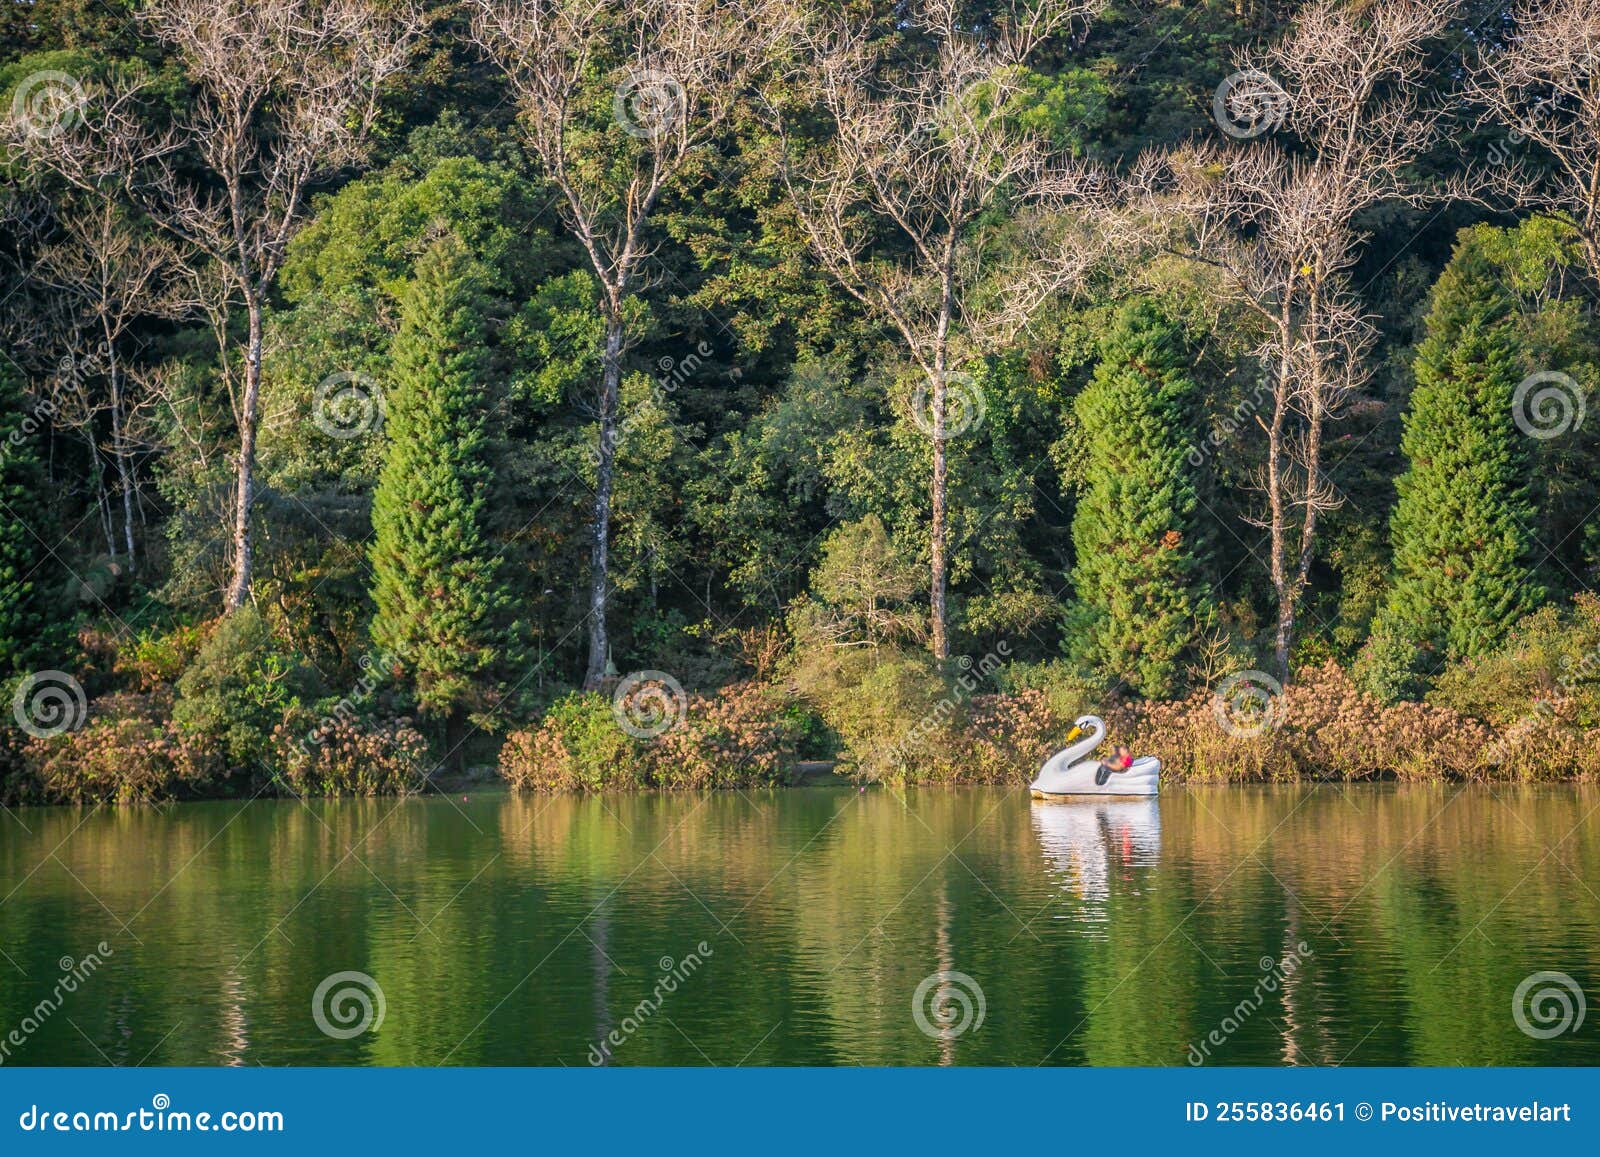 lago negro, black lake, and swan pedal boat, gramado, rio grande do sul, brazil